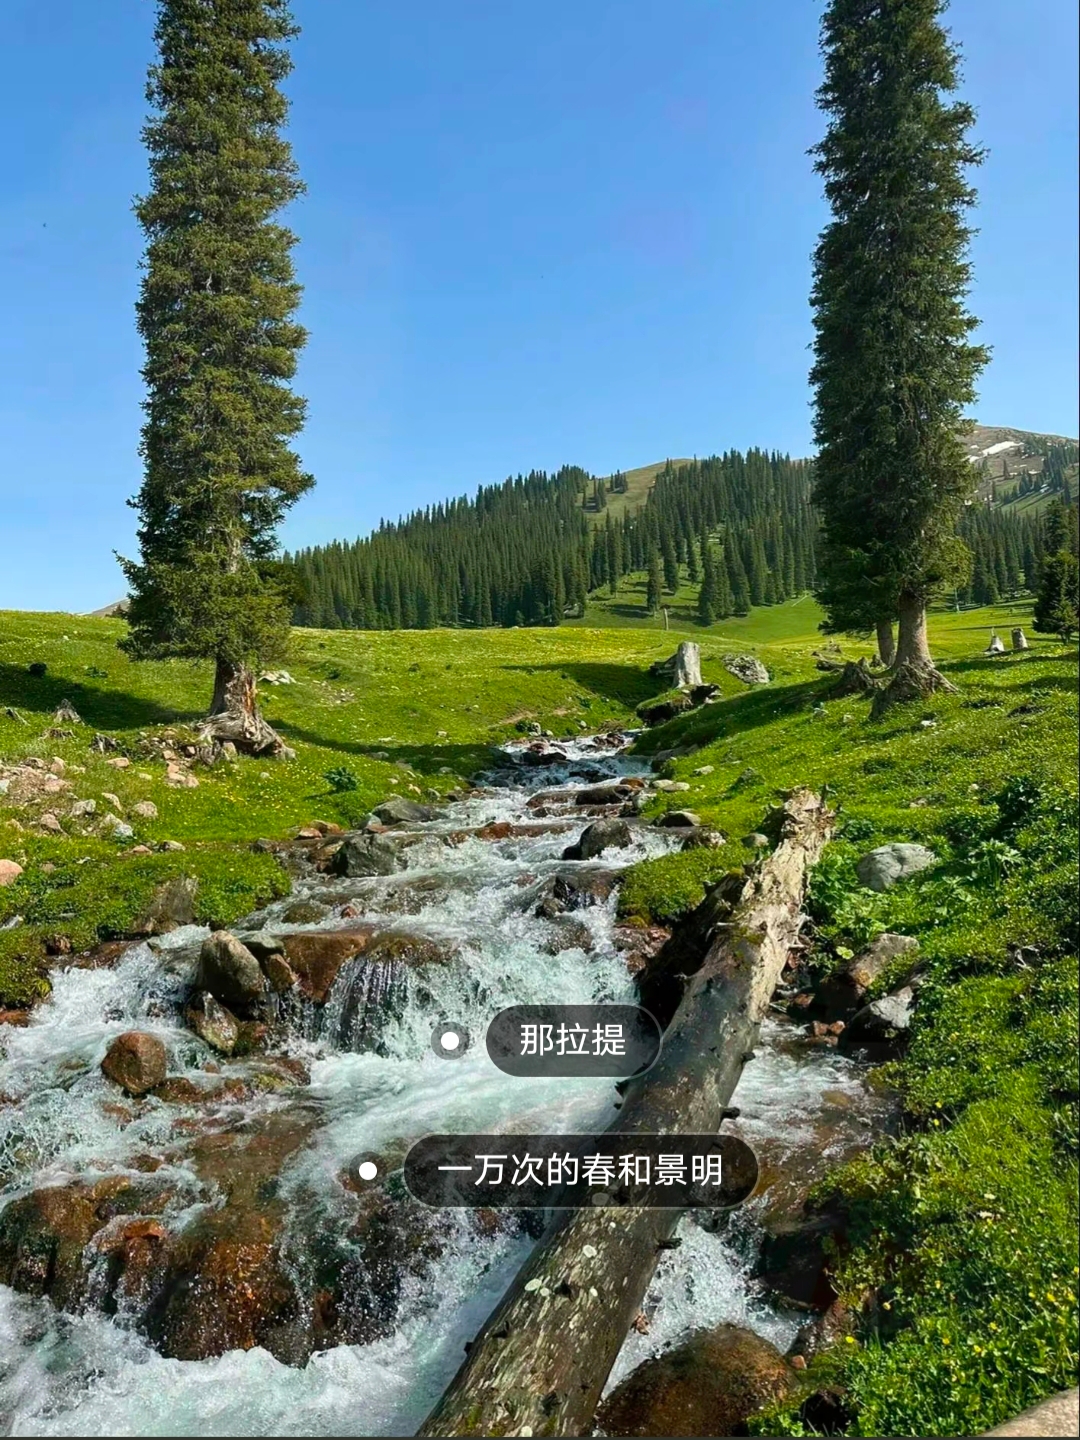 你可以永远相信新疆的夏天!